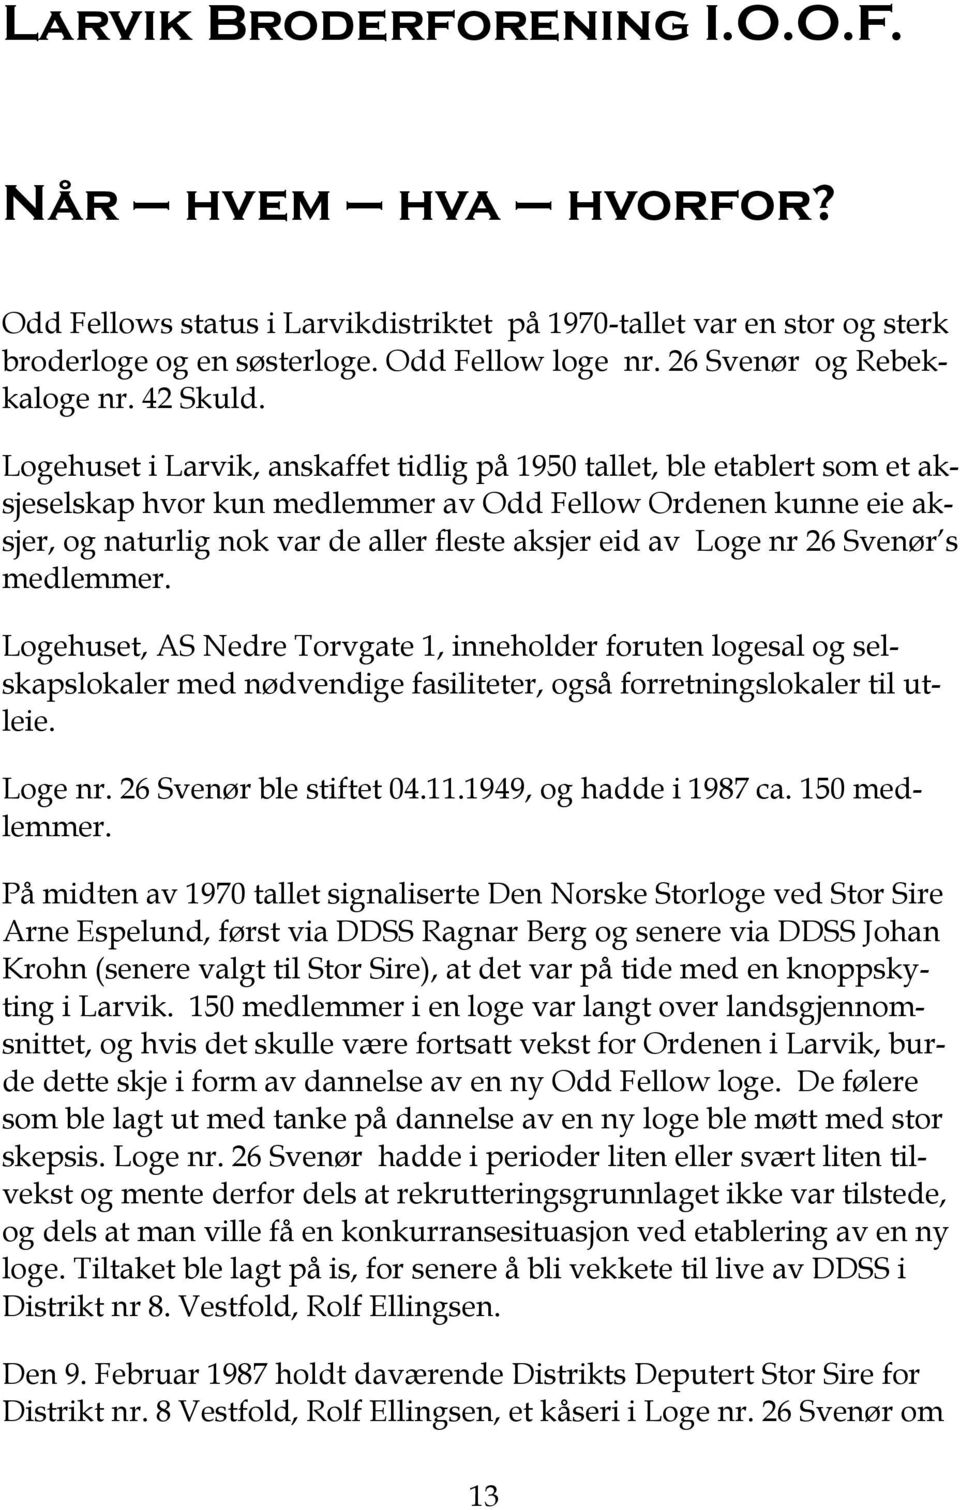 Logehuset i Larvik, anskaffet tidlig på 1950 tallet, ble etablert som et aksjeselskap hvor kun medlemmer av Odd Fellow Ordenen kunne eie aksjer, og naturlig nok var de aller fleste aksjer eid av Loge